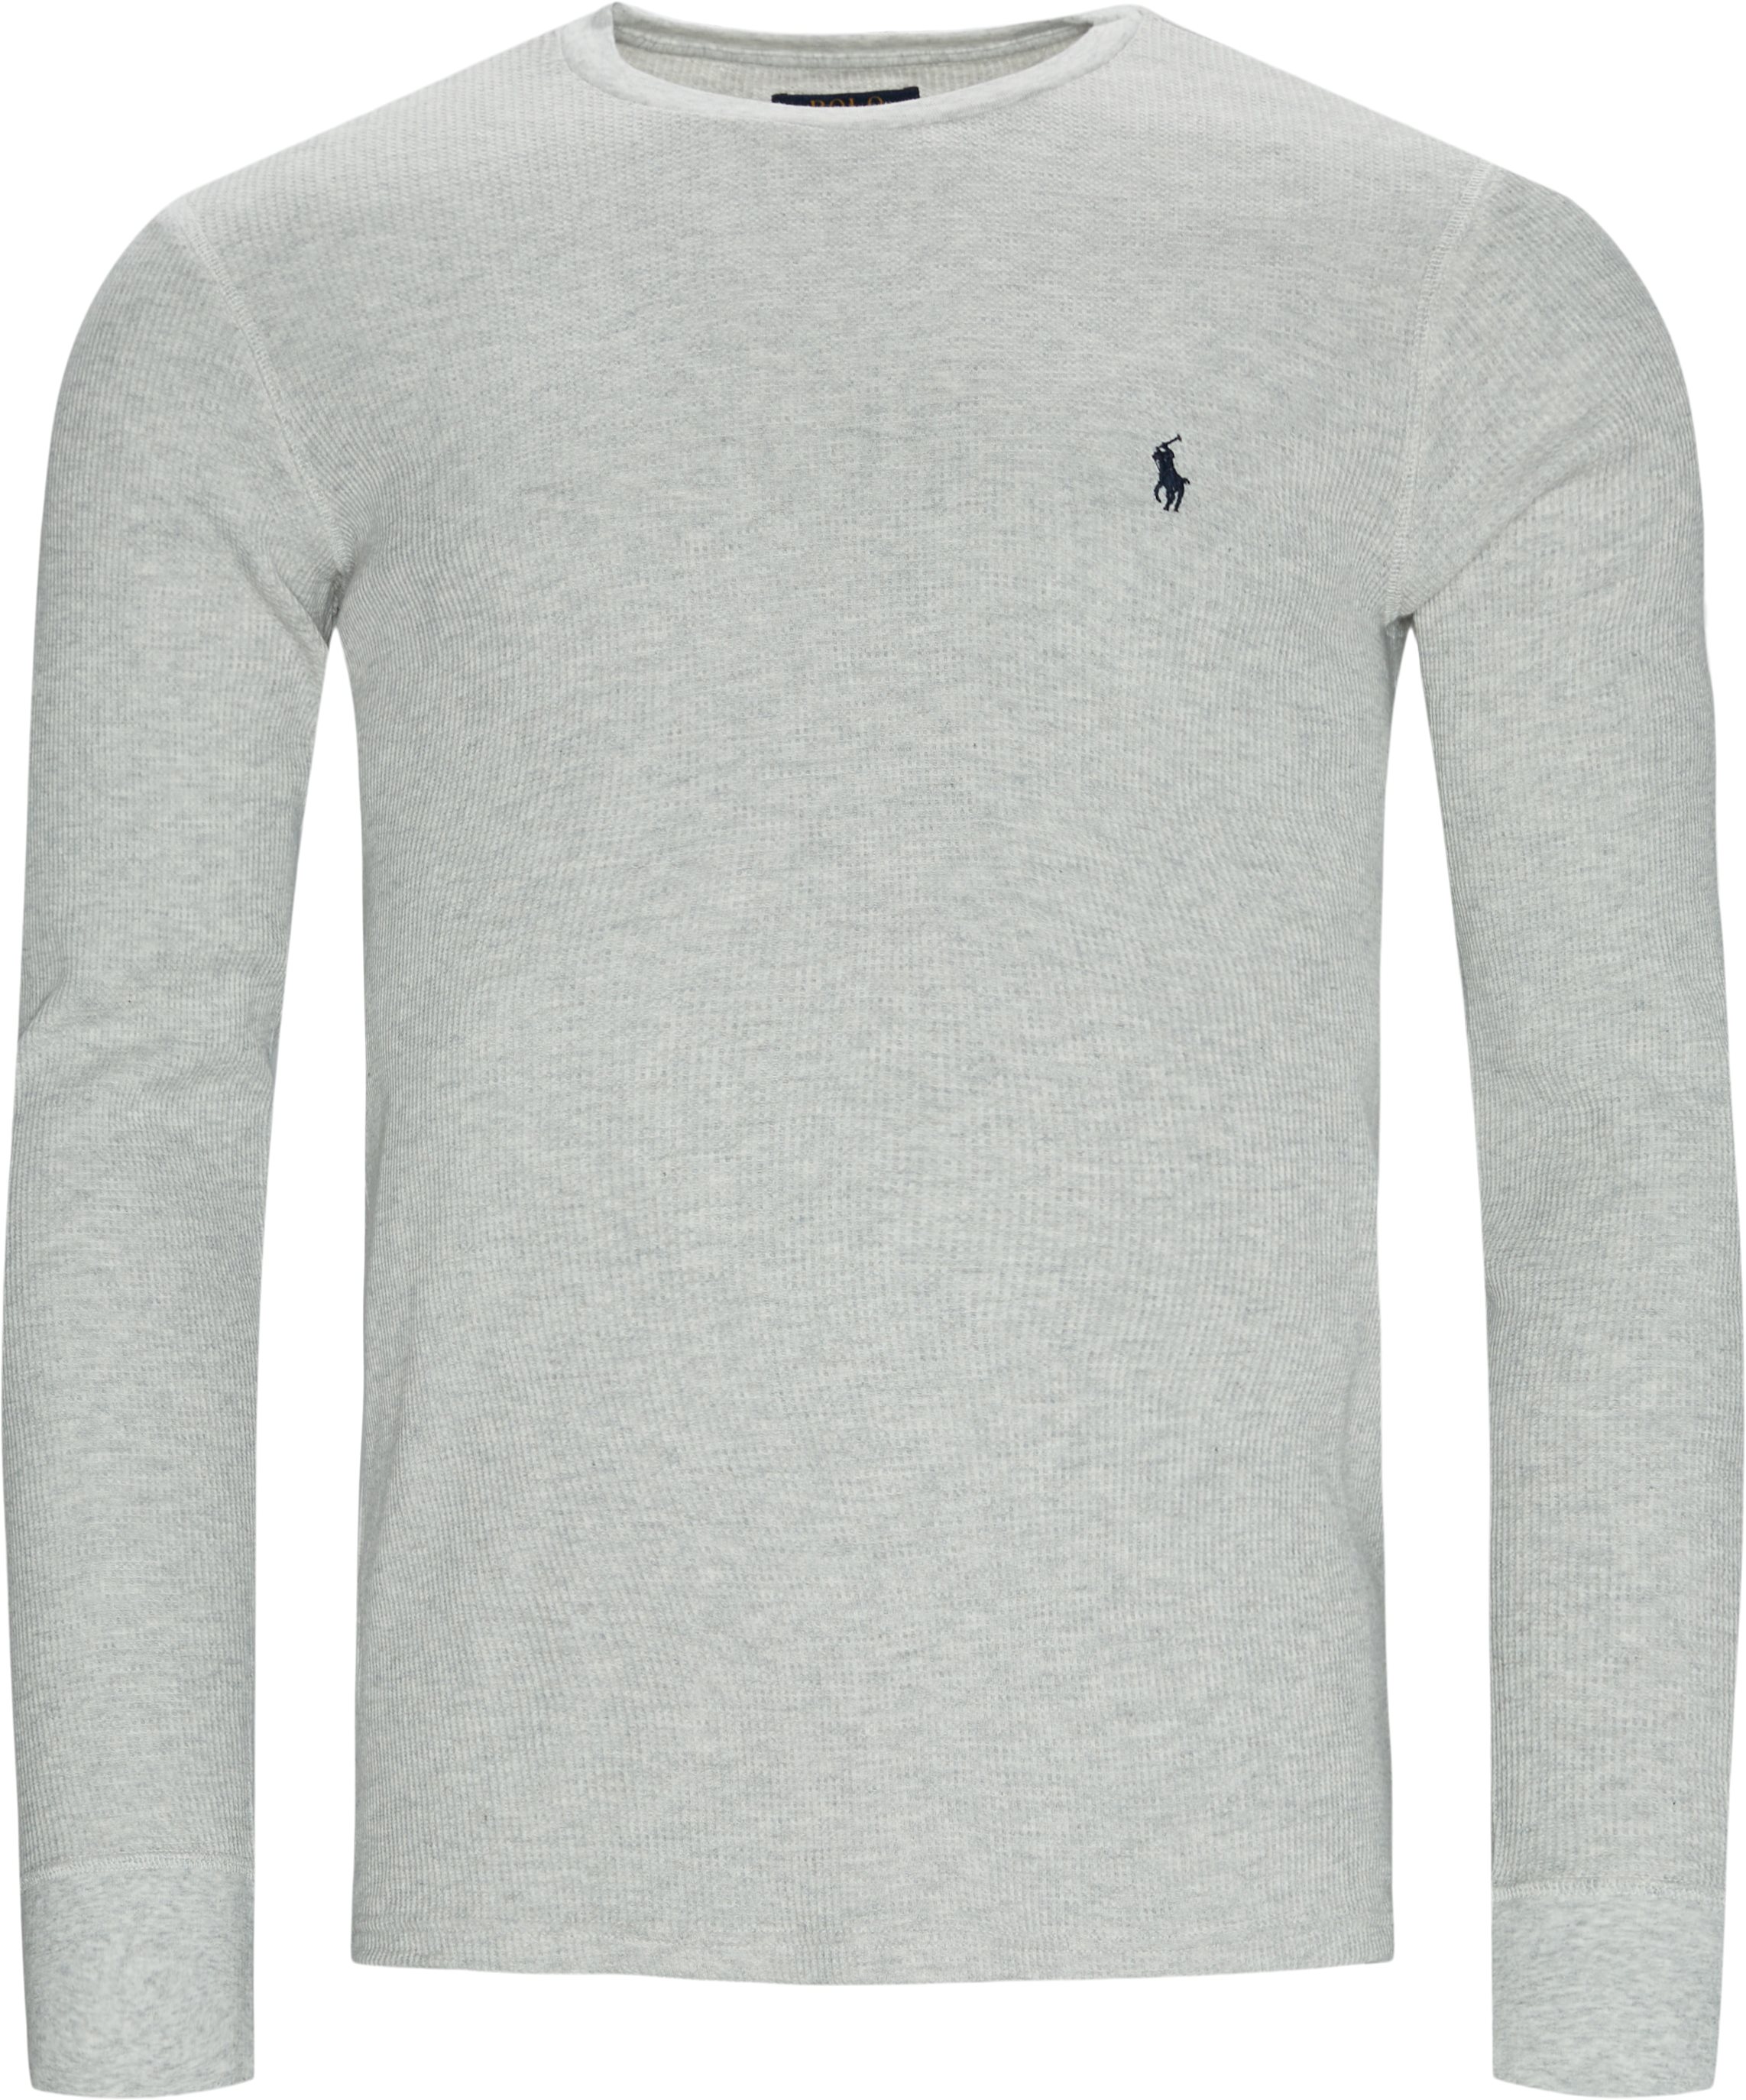 714830284 L/æ Tee - T-shirts - Regular fit - Grey